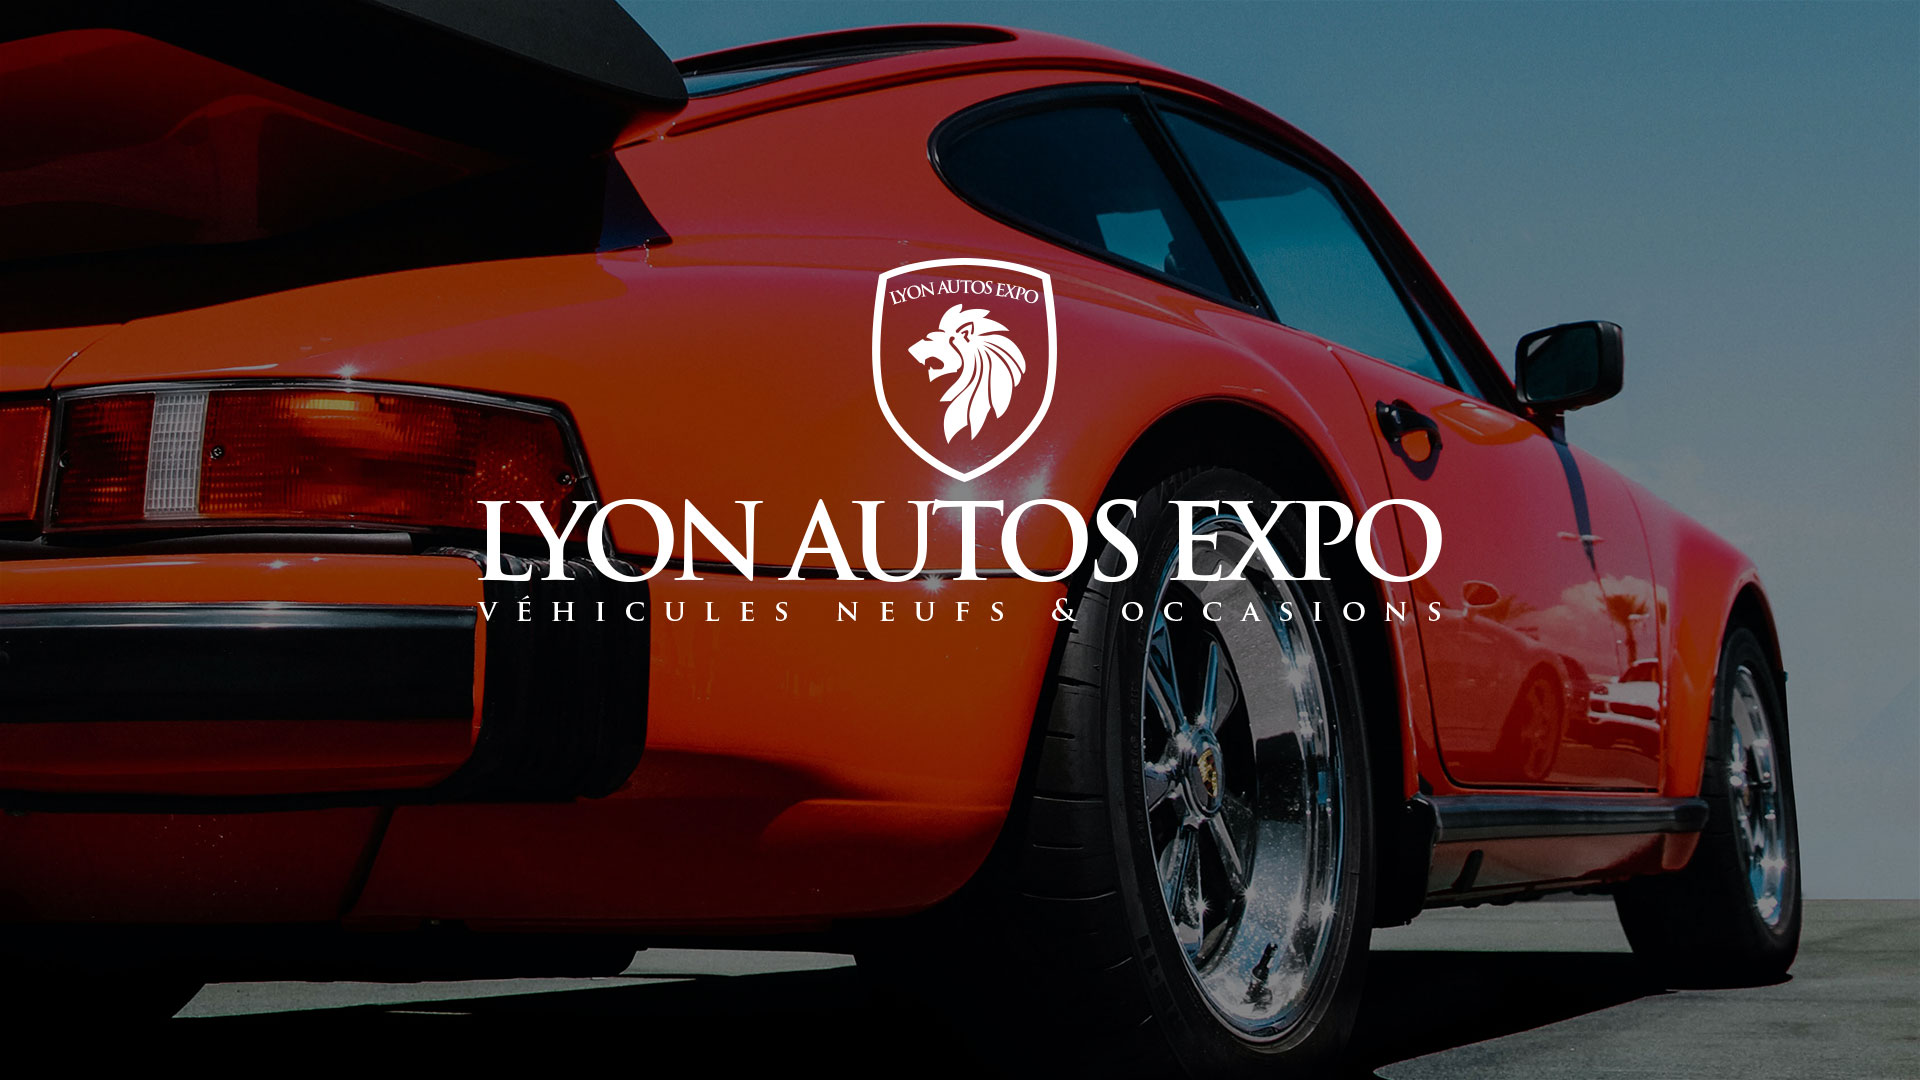 Univers de marque Lyon Autos Expo